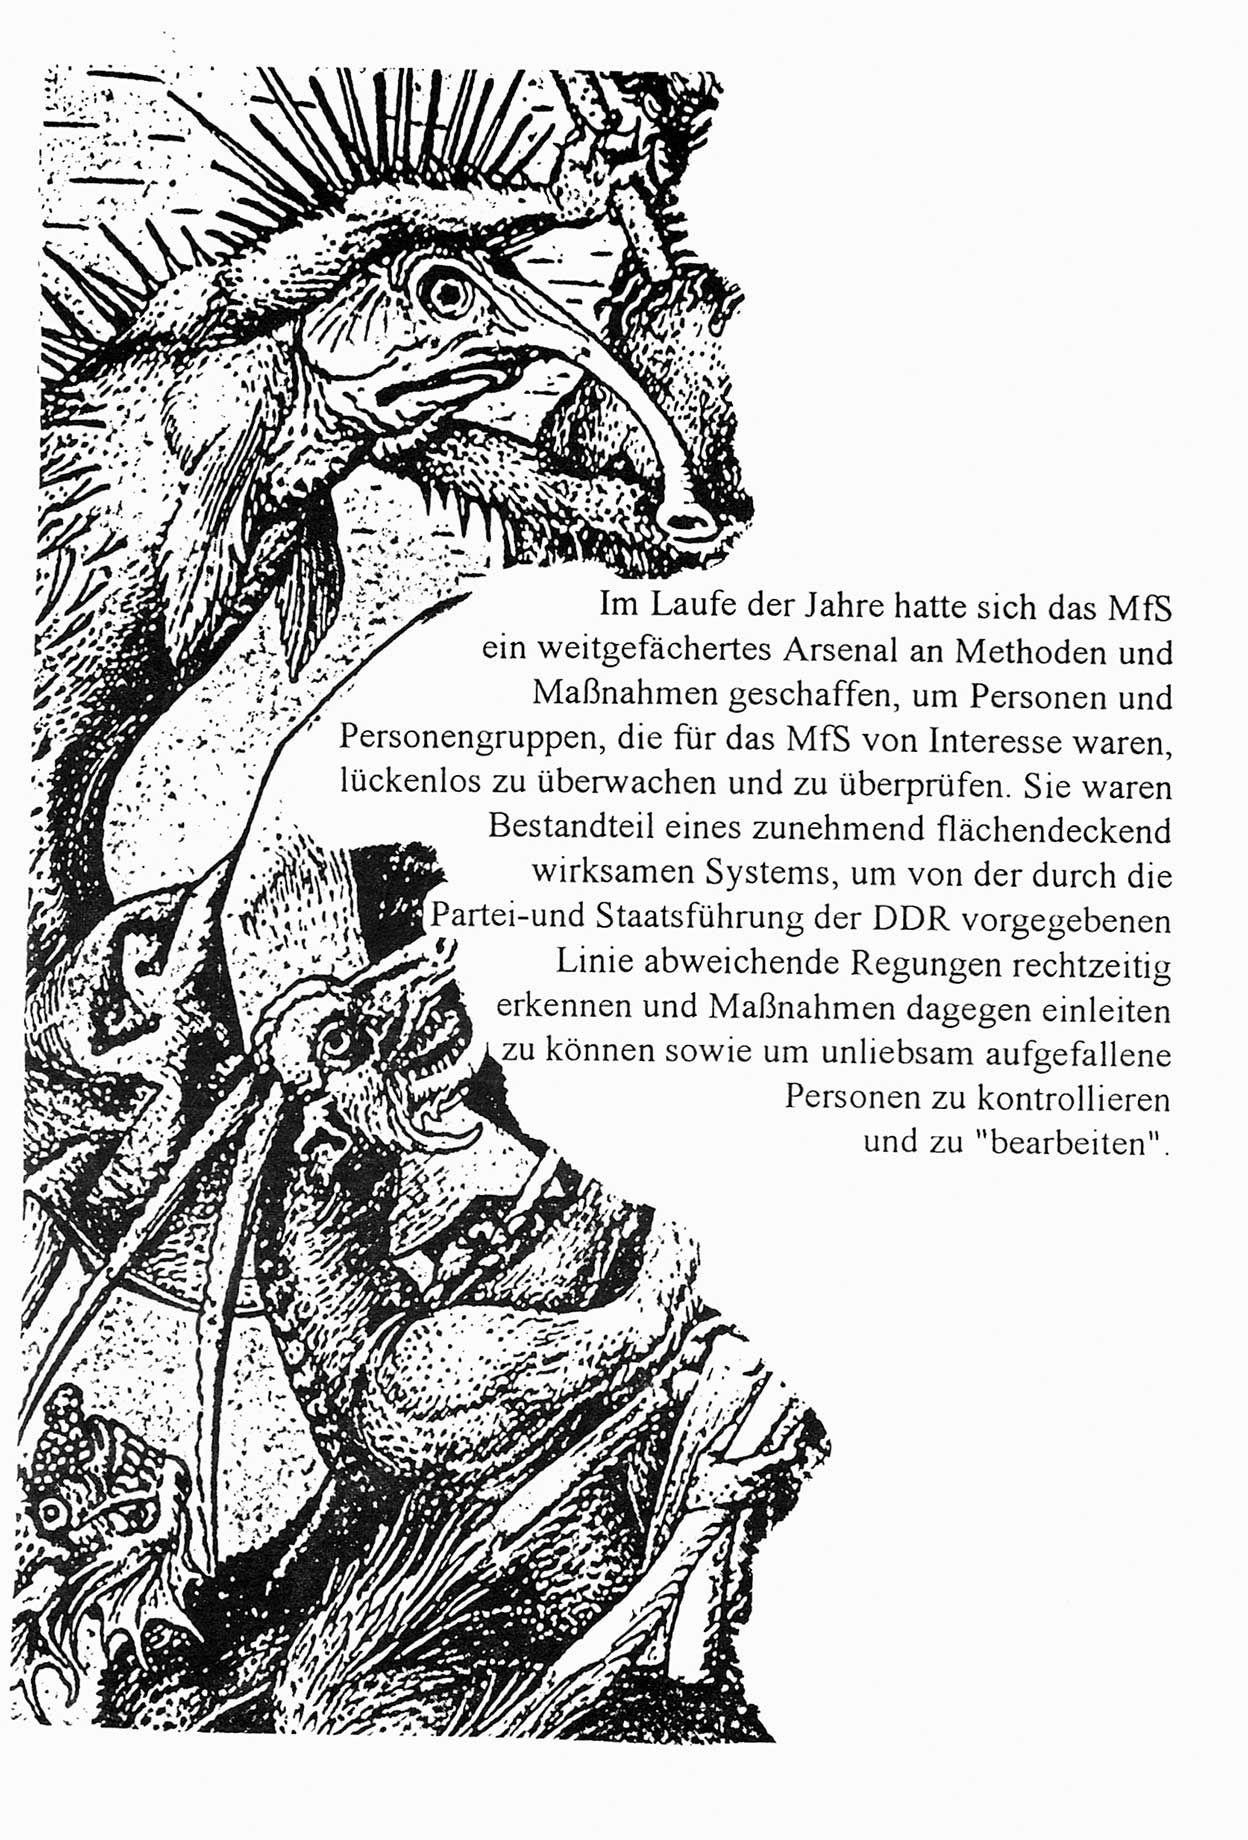 Zwie-Gespräch, Beiträge zur Aufarbeitung der Staatssicherheits-Vergangenheit [Deutsche Demokratische Republik (DDR)], Ausgabe Nr. 5, Berlin 1991, Seite 17 (Zwie-Gespr. Ausg. 5 1991, S. 17)